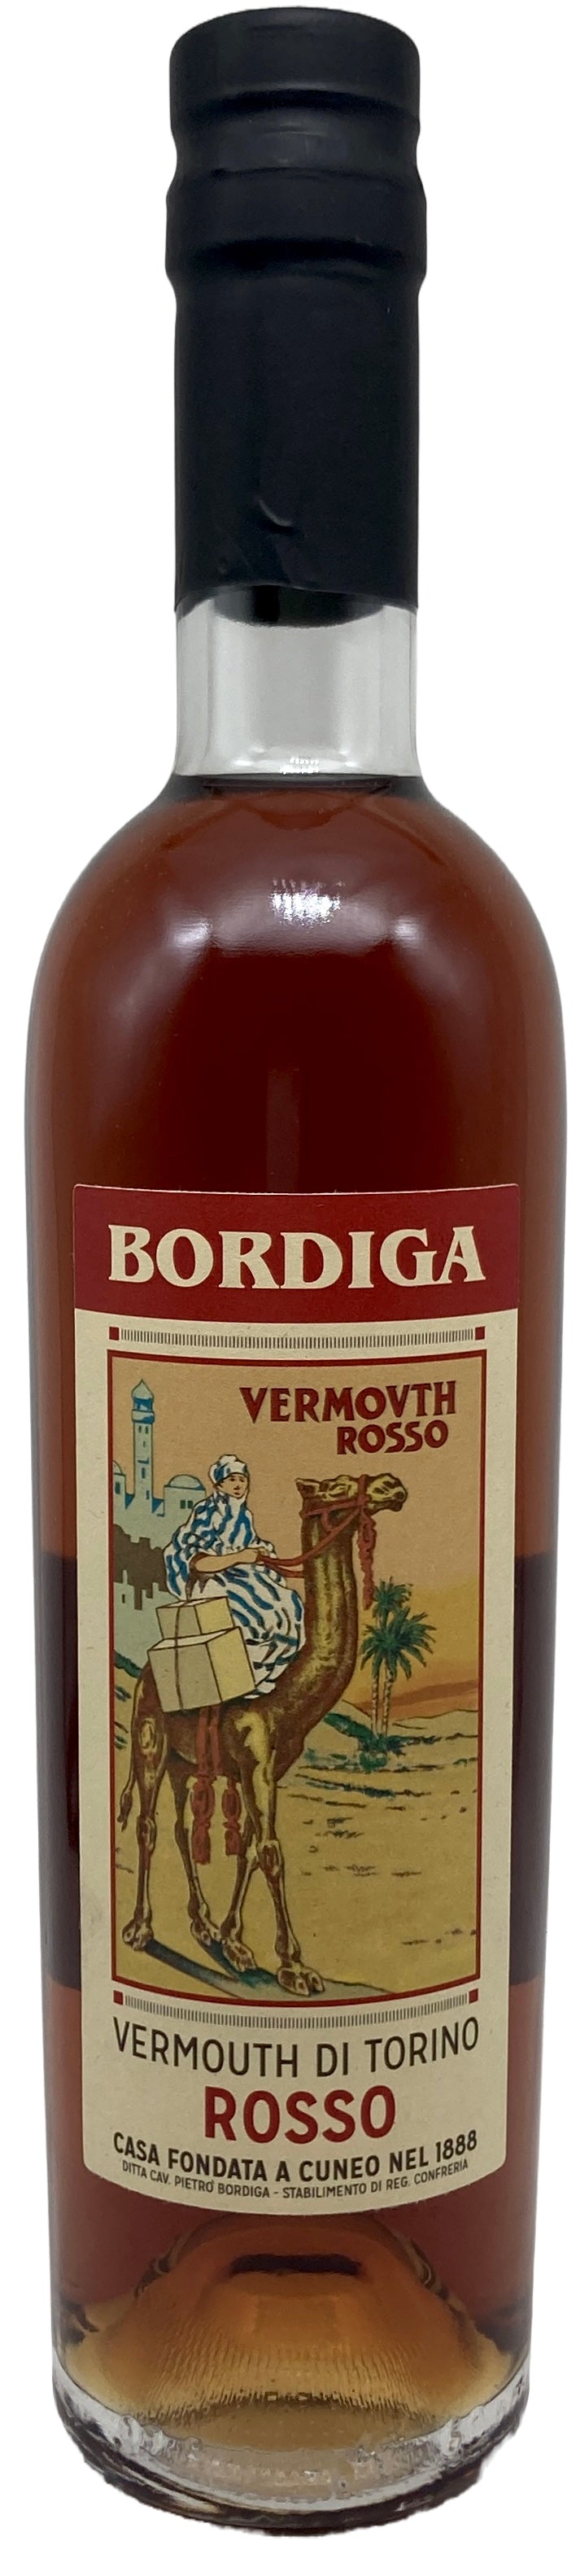 Vermouth di Torino Rosso 375ml